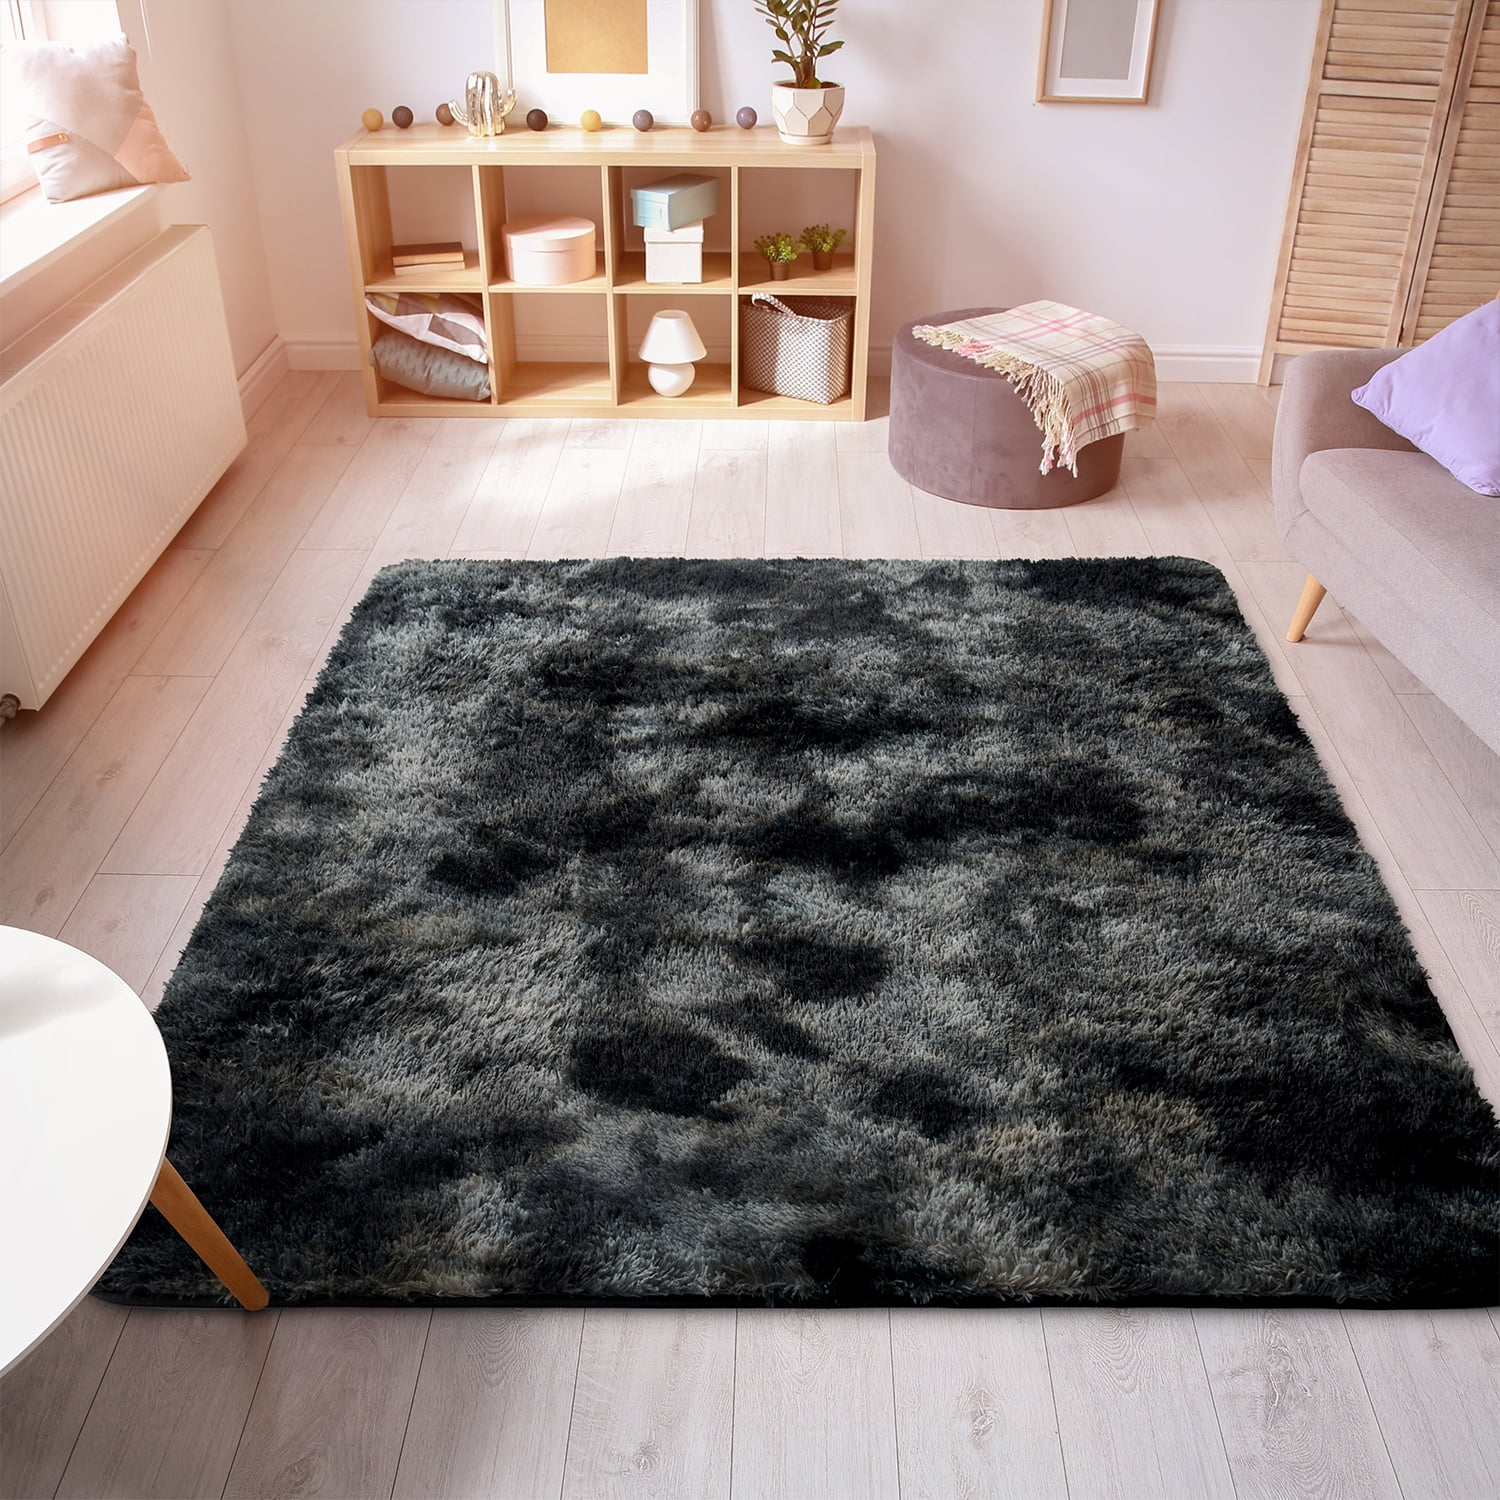 Star Wars#Velboa Floor Rug Carpet Living Room Bedroom Doormat Non-slip Chair Mat 